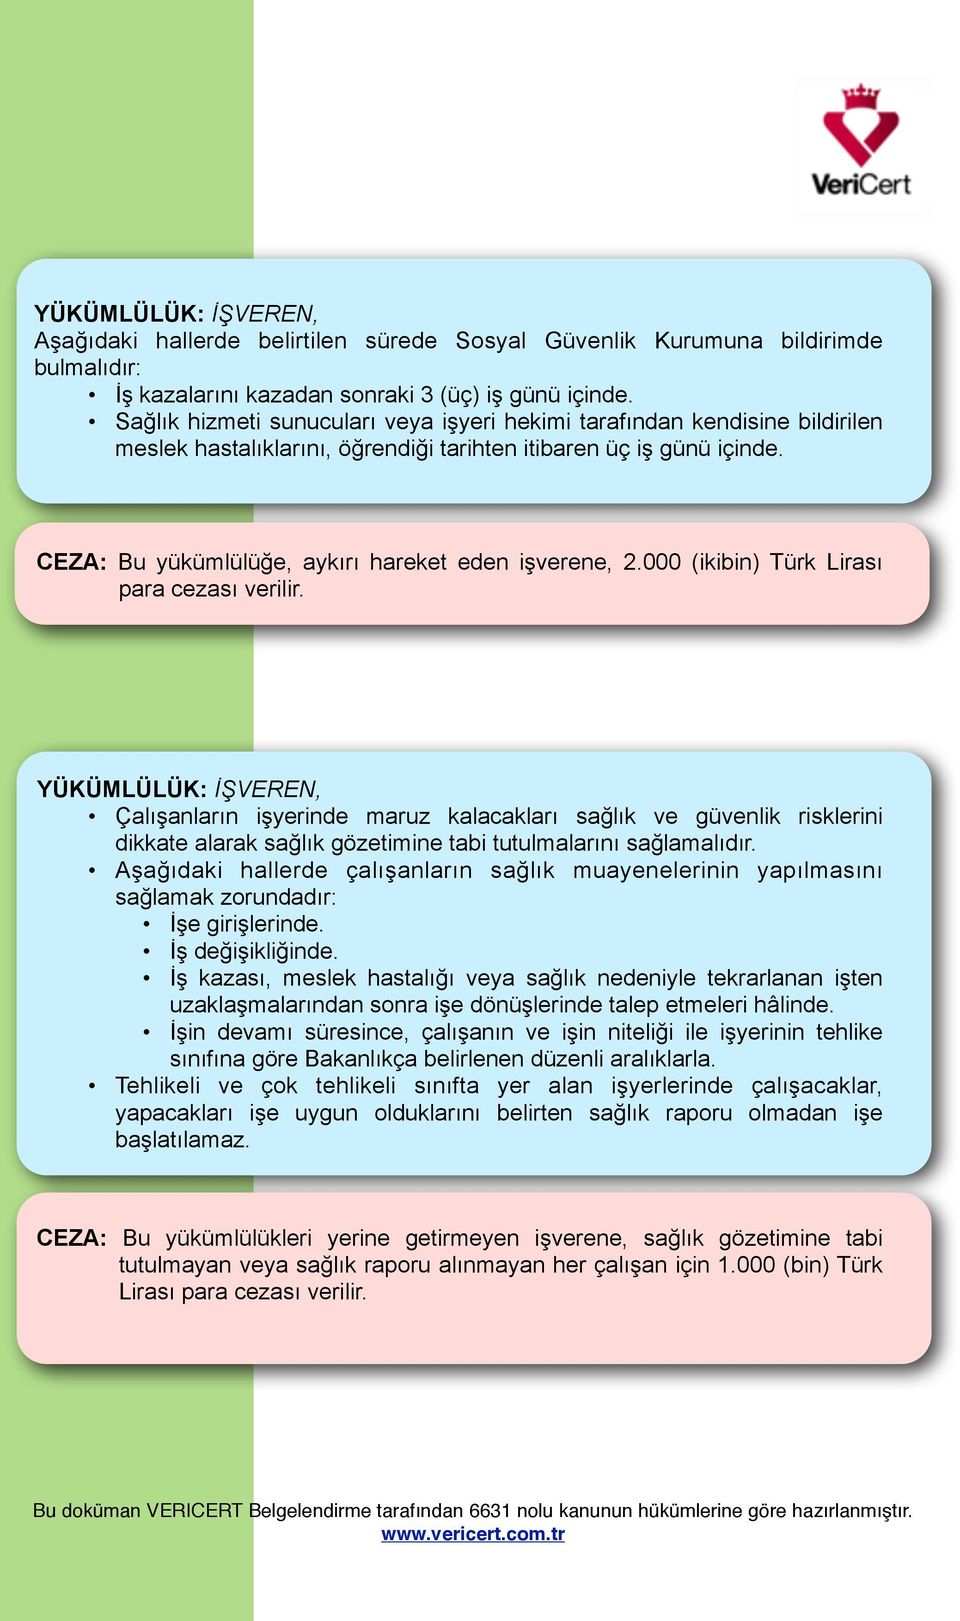 CEZA: Bu yükümlülüğe, aykırı hareket eden işverene, 2.000 (ikibin) Türk Lirası para cezası verilir.